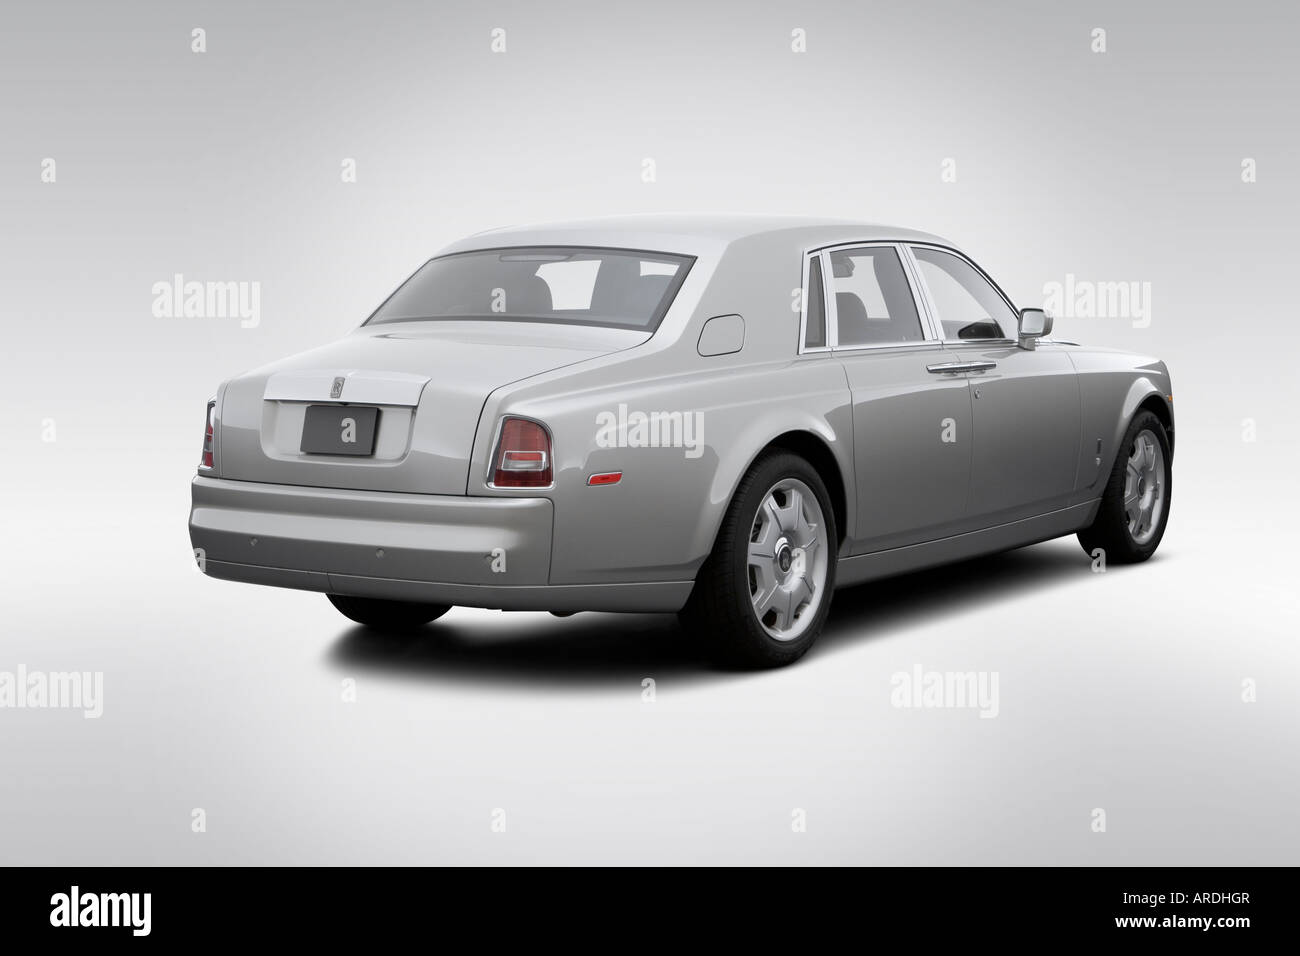 2006 Rolls-Royce Phantom dans l'argent - vue d'angle arrière Photo Stock -  Alamy